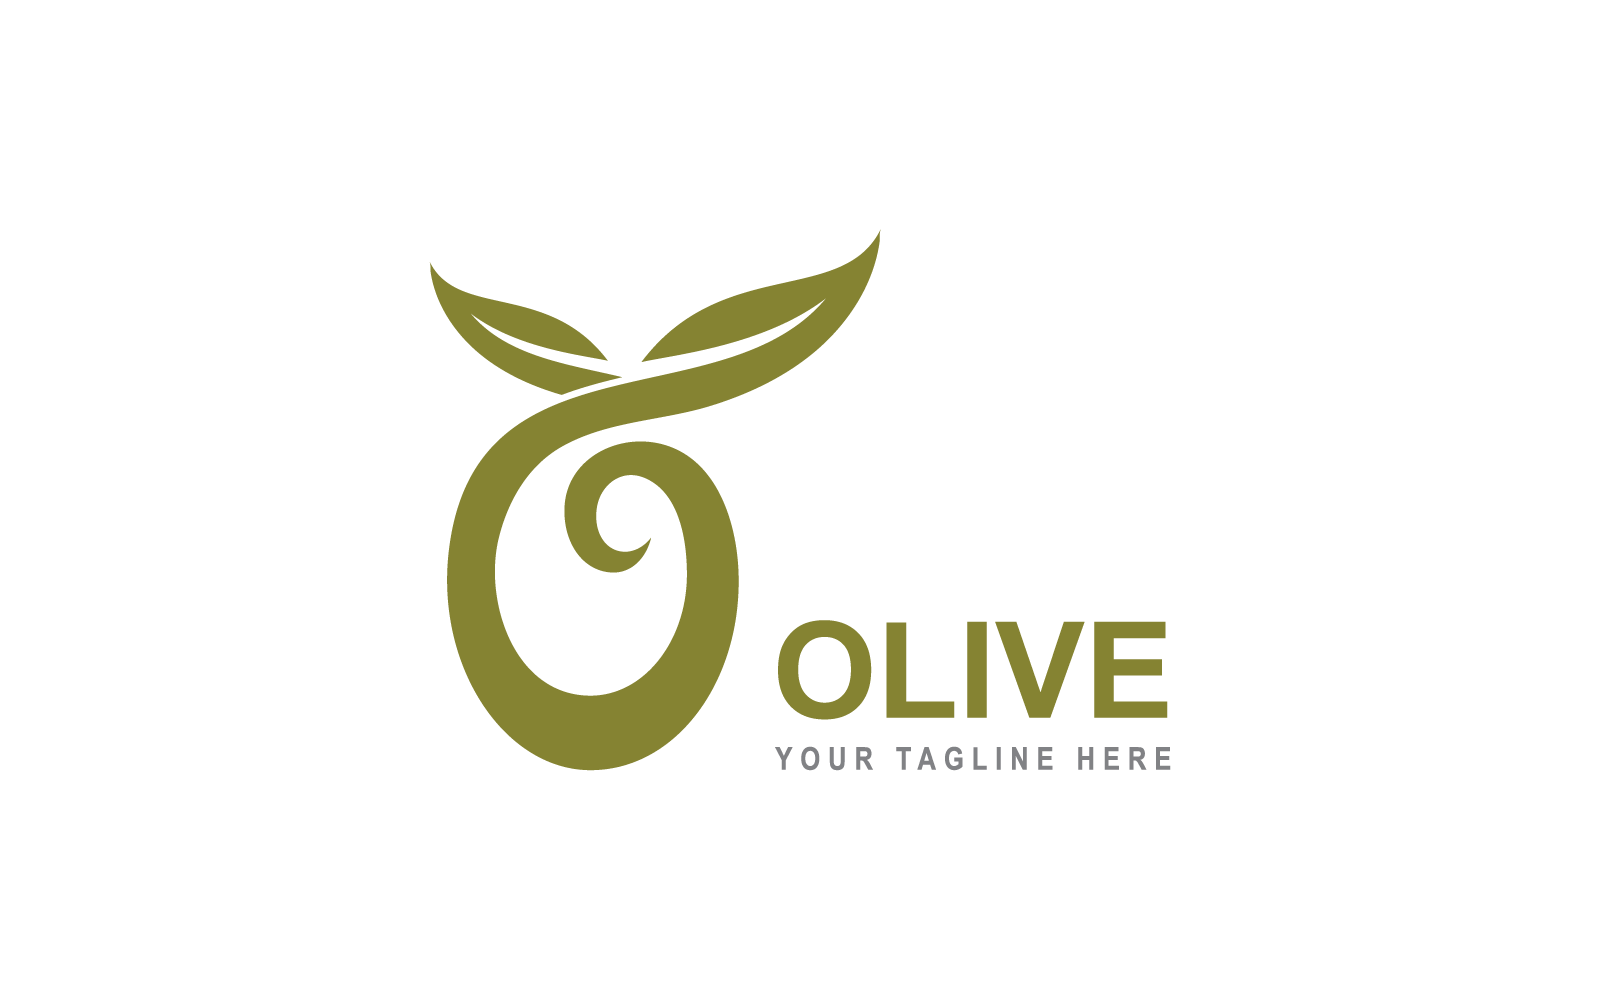 Diseño plano del vector de la ilustración de la plantilla del logotipo de oliva